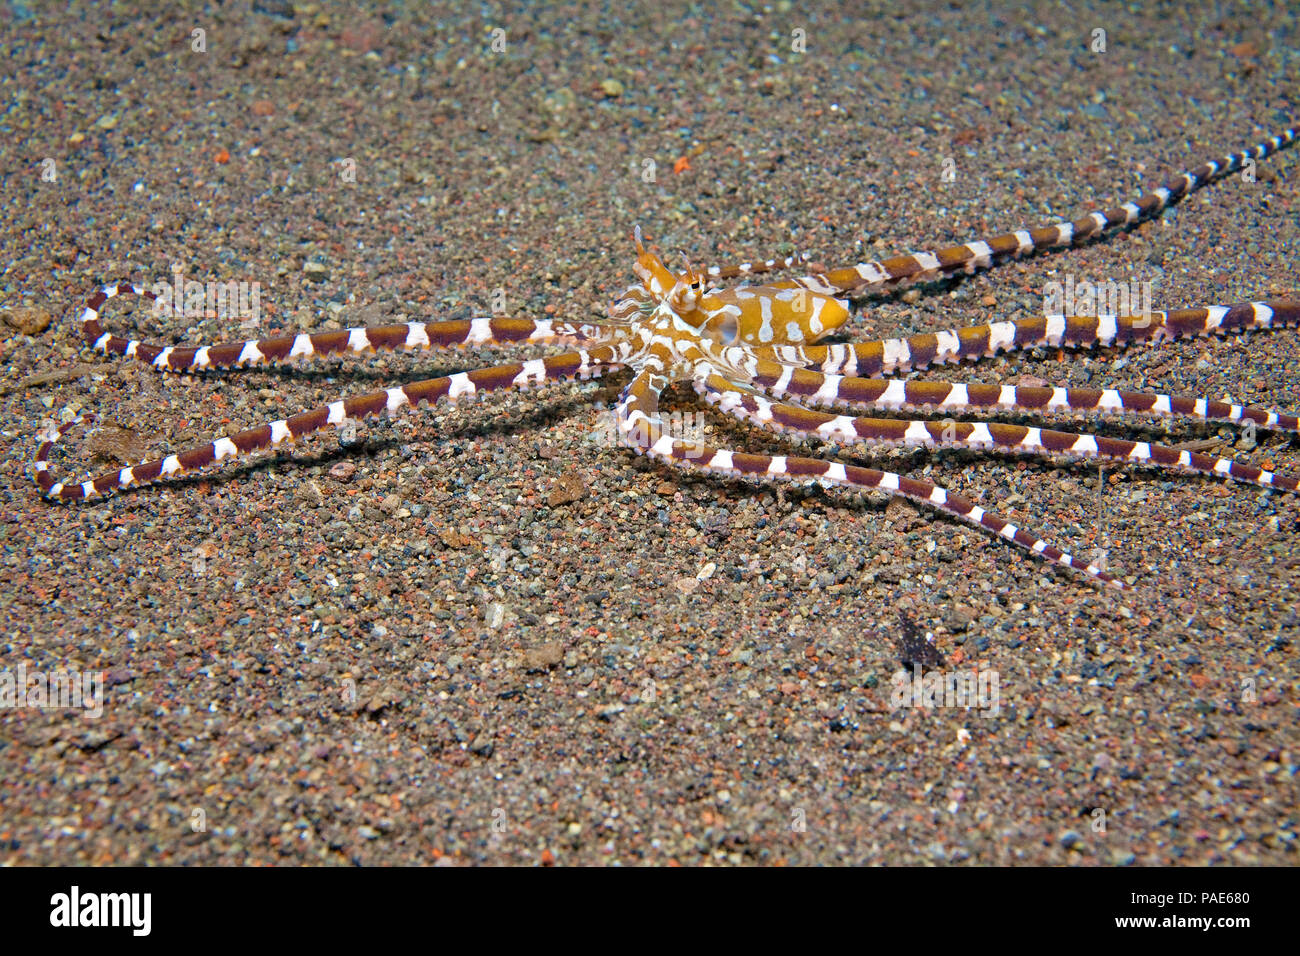 Wonderpus Oktopus (Wunderpus photogenicus), Halmahera, Indonesien | Wonderpus octopus (Wonderpus photogenicus), Halmahera, Indonesia Stock Photo